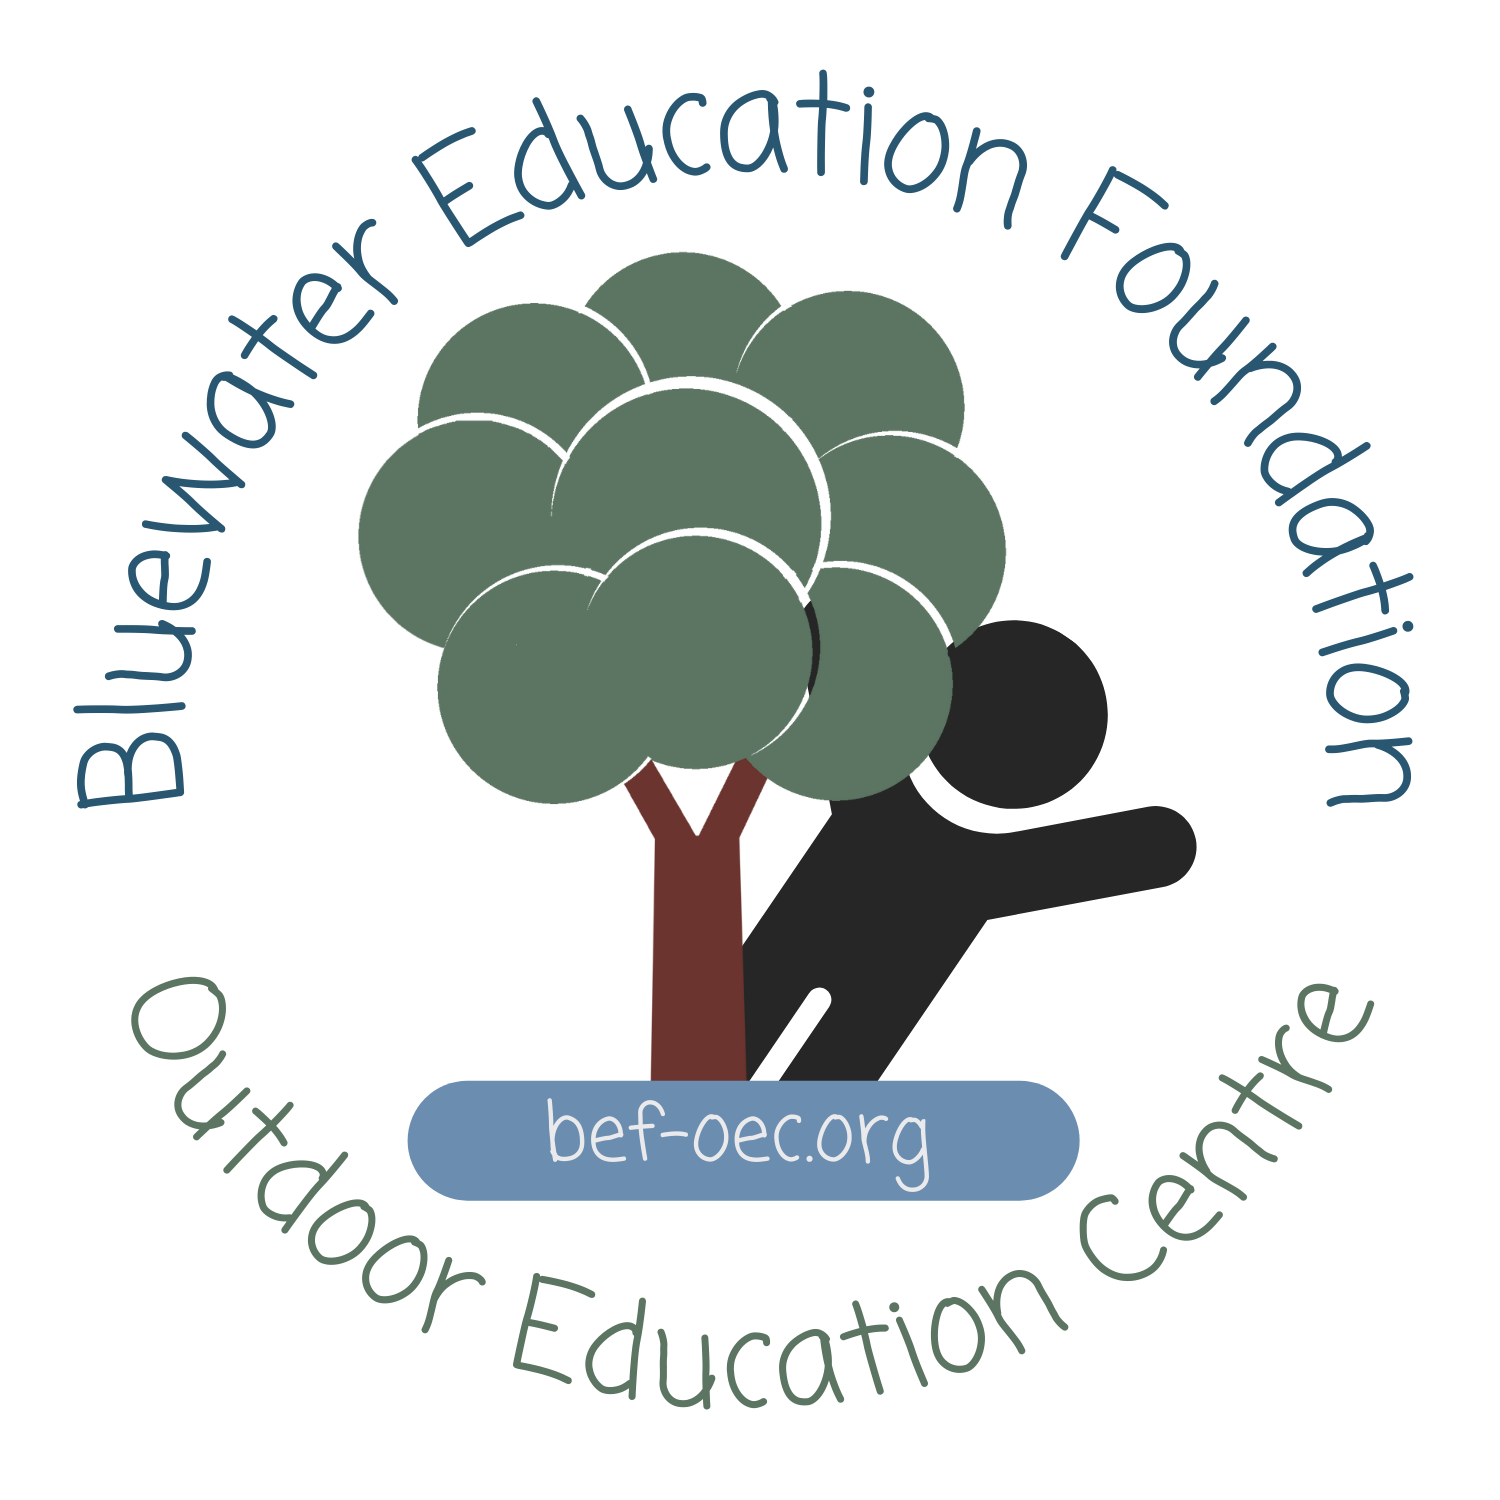 Bluewater Education Foundation logo